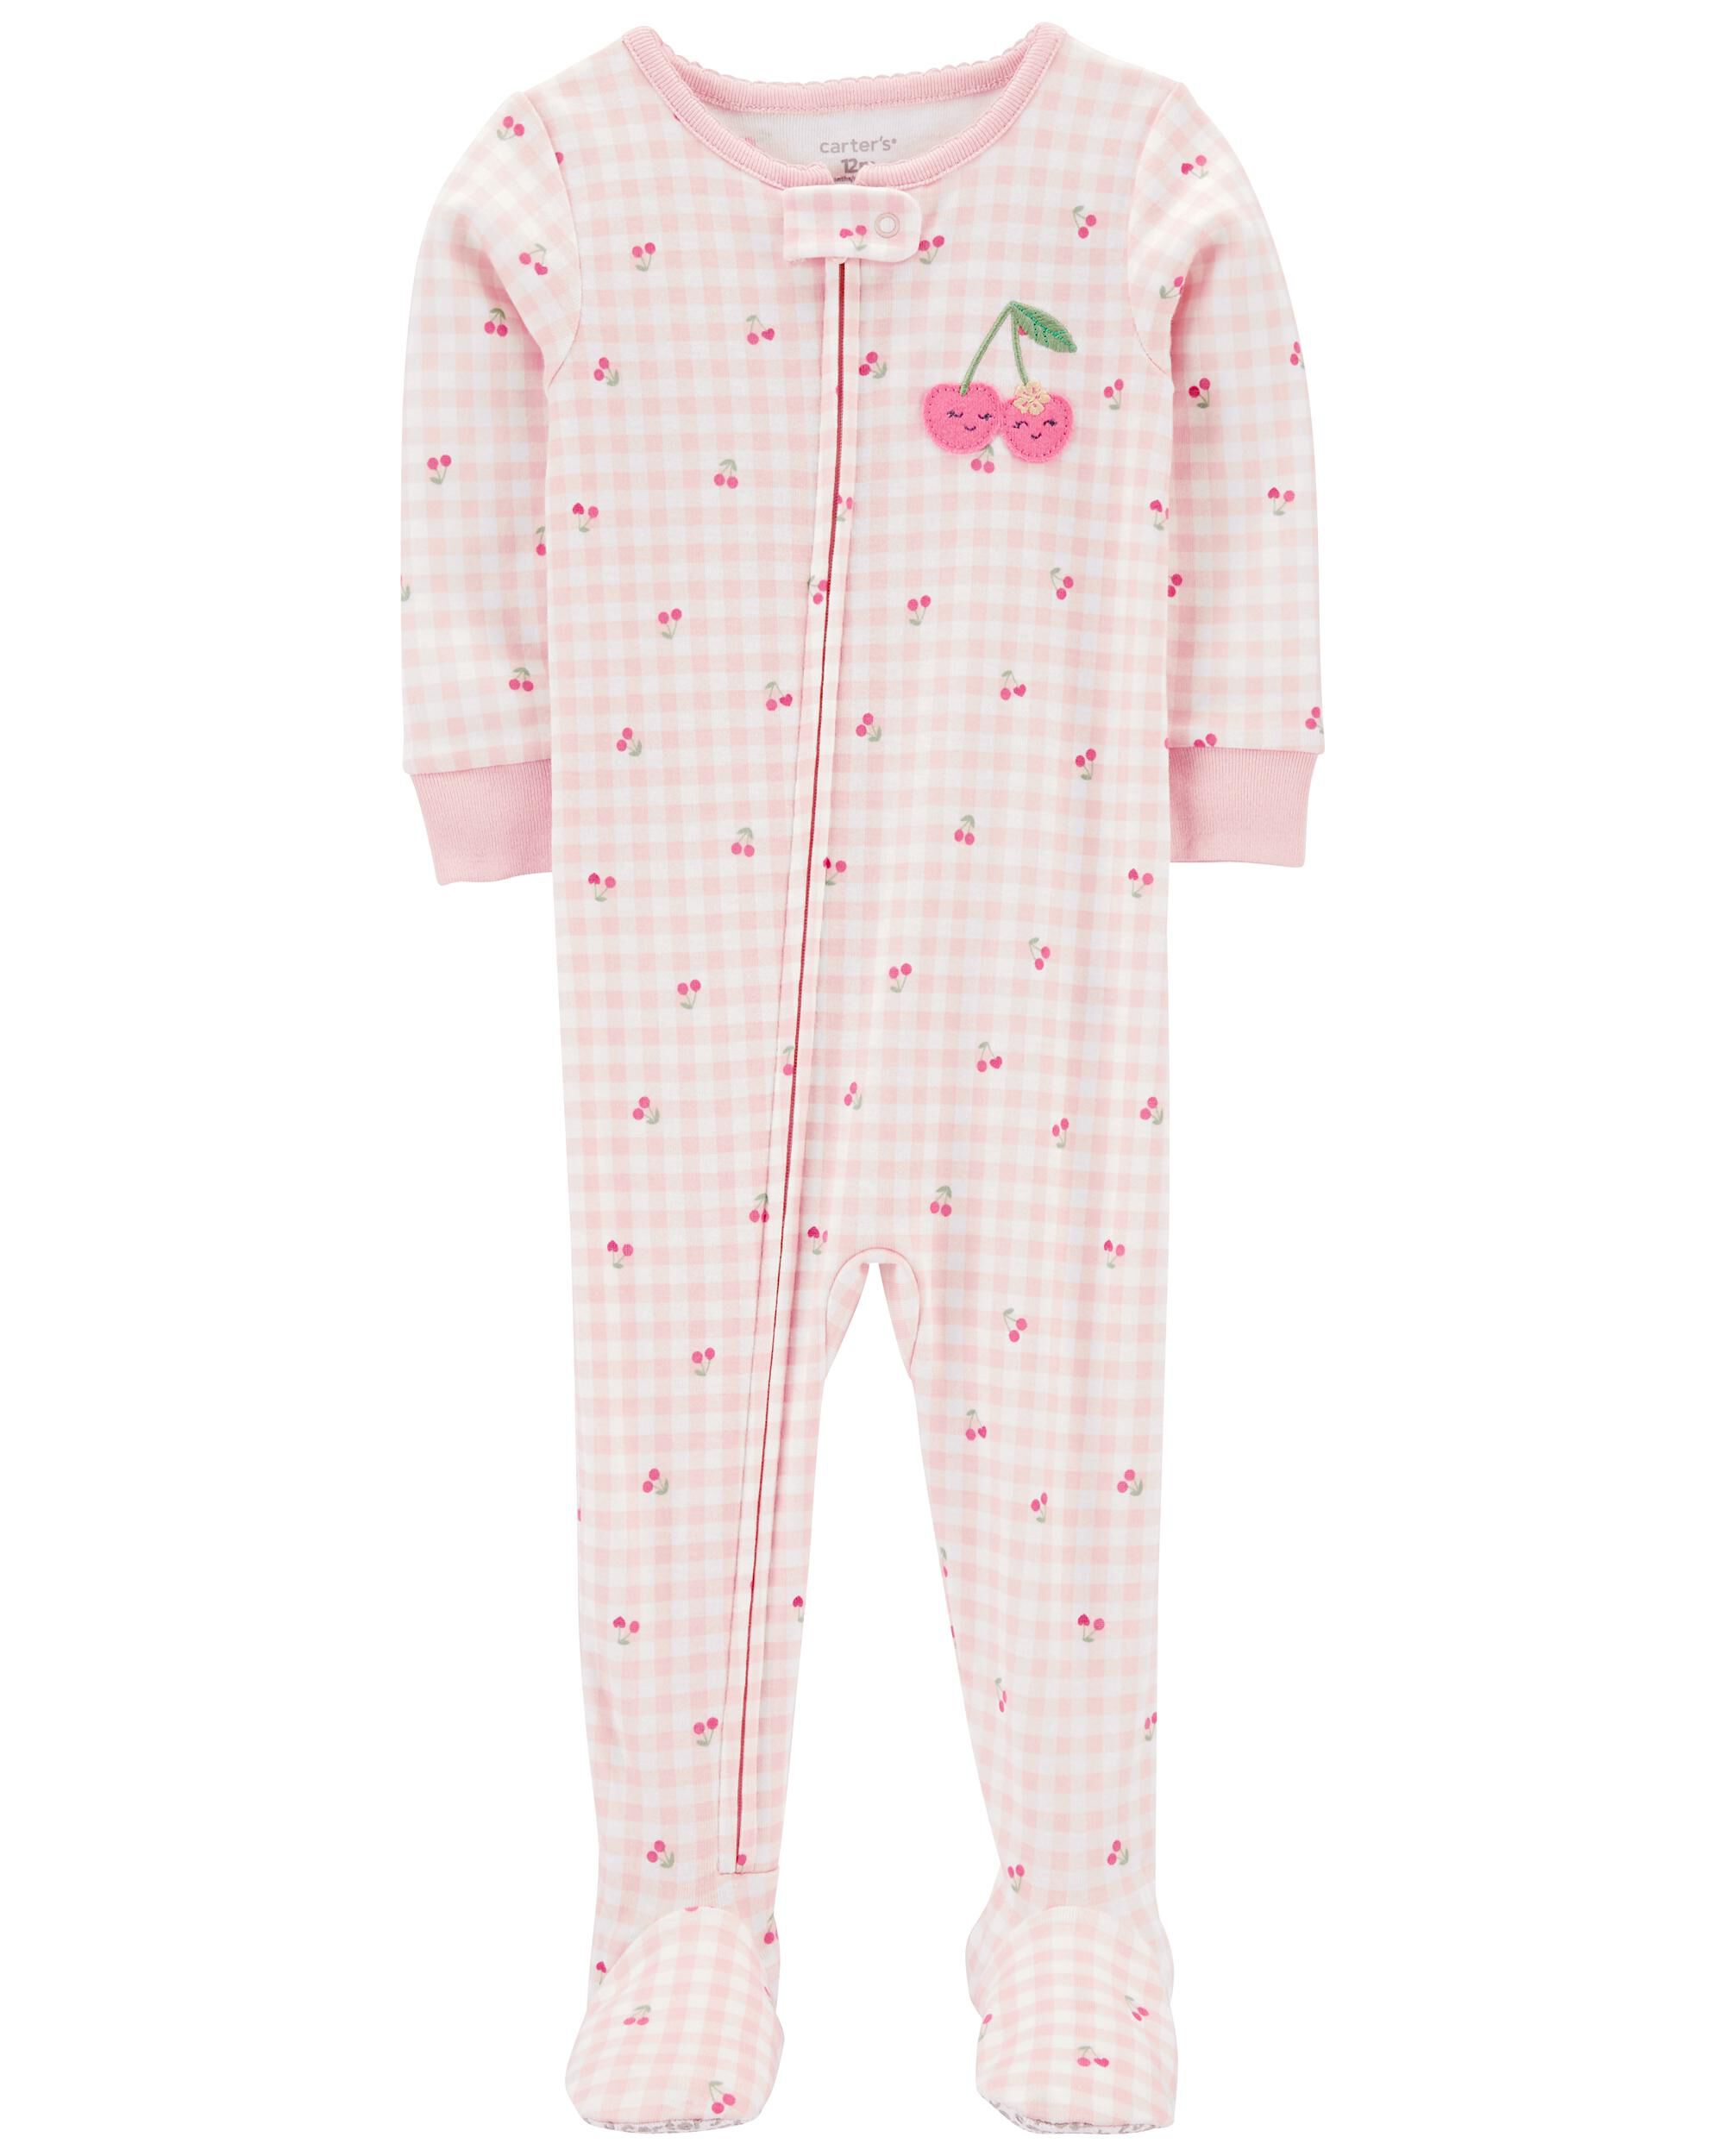 New Carter's Owl Fleece Pajama PJs 1 pc Toddler Girl Sleeper Footie Pink 